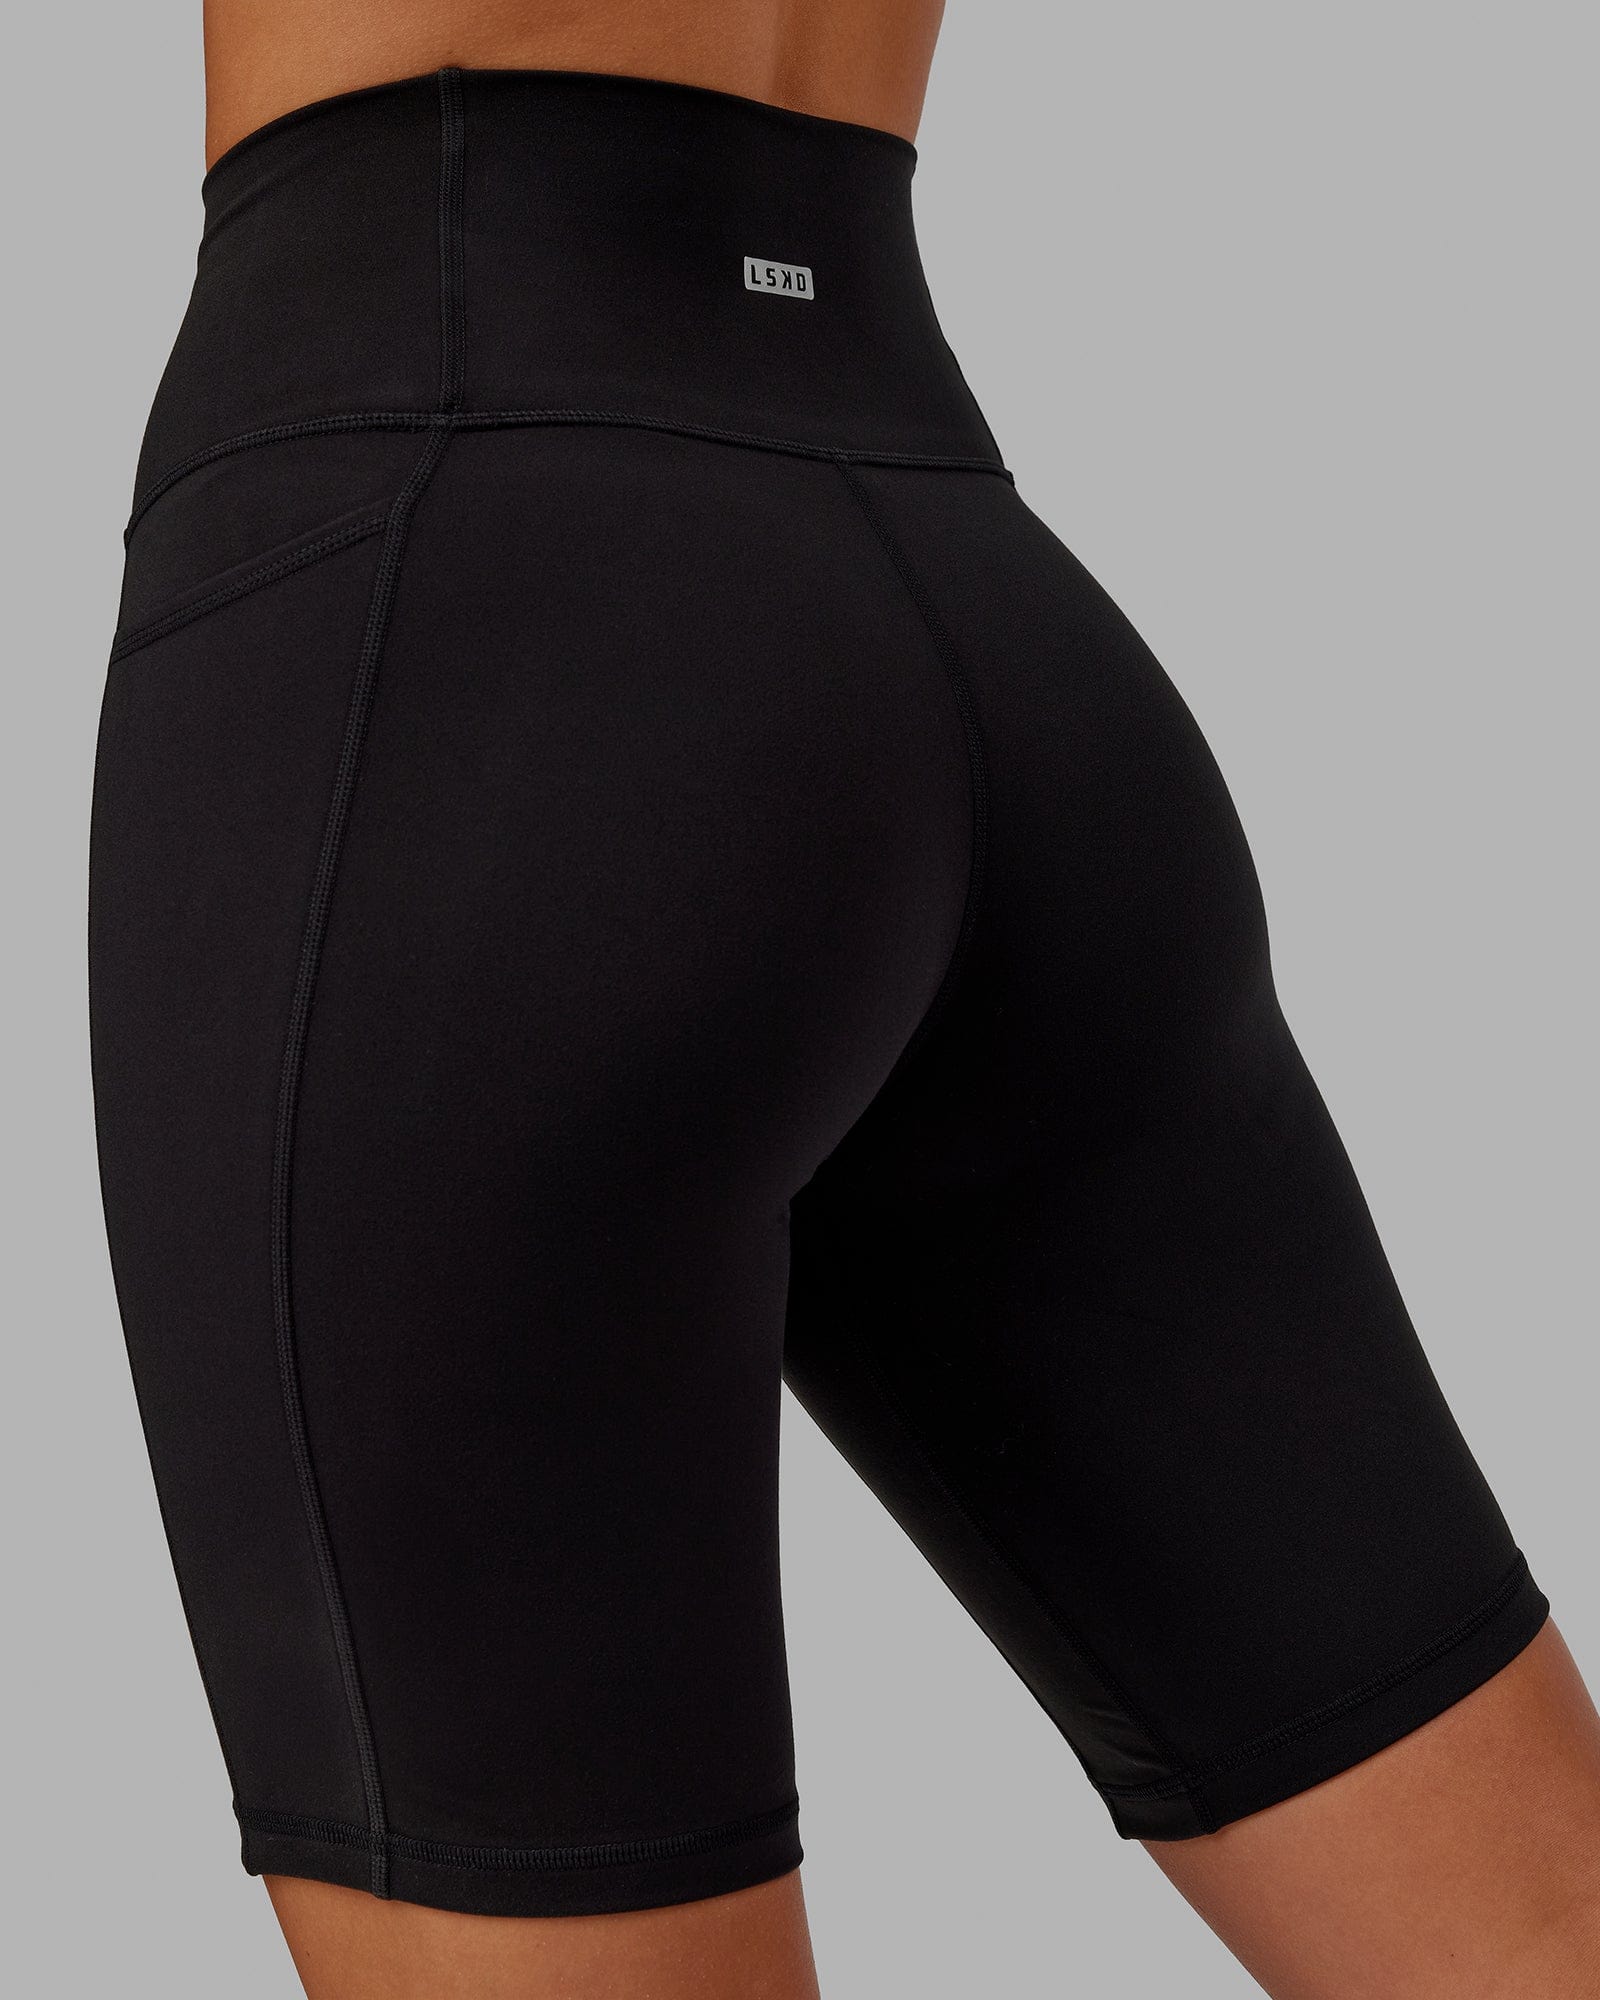 Premium Cotton Biker Shorts - Closeout